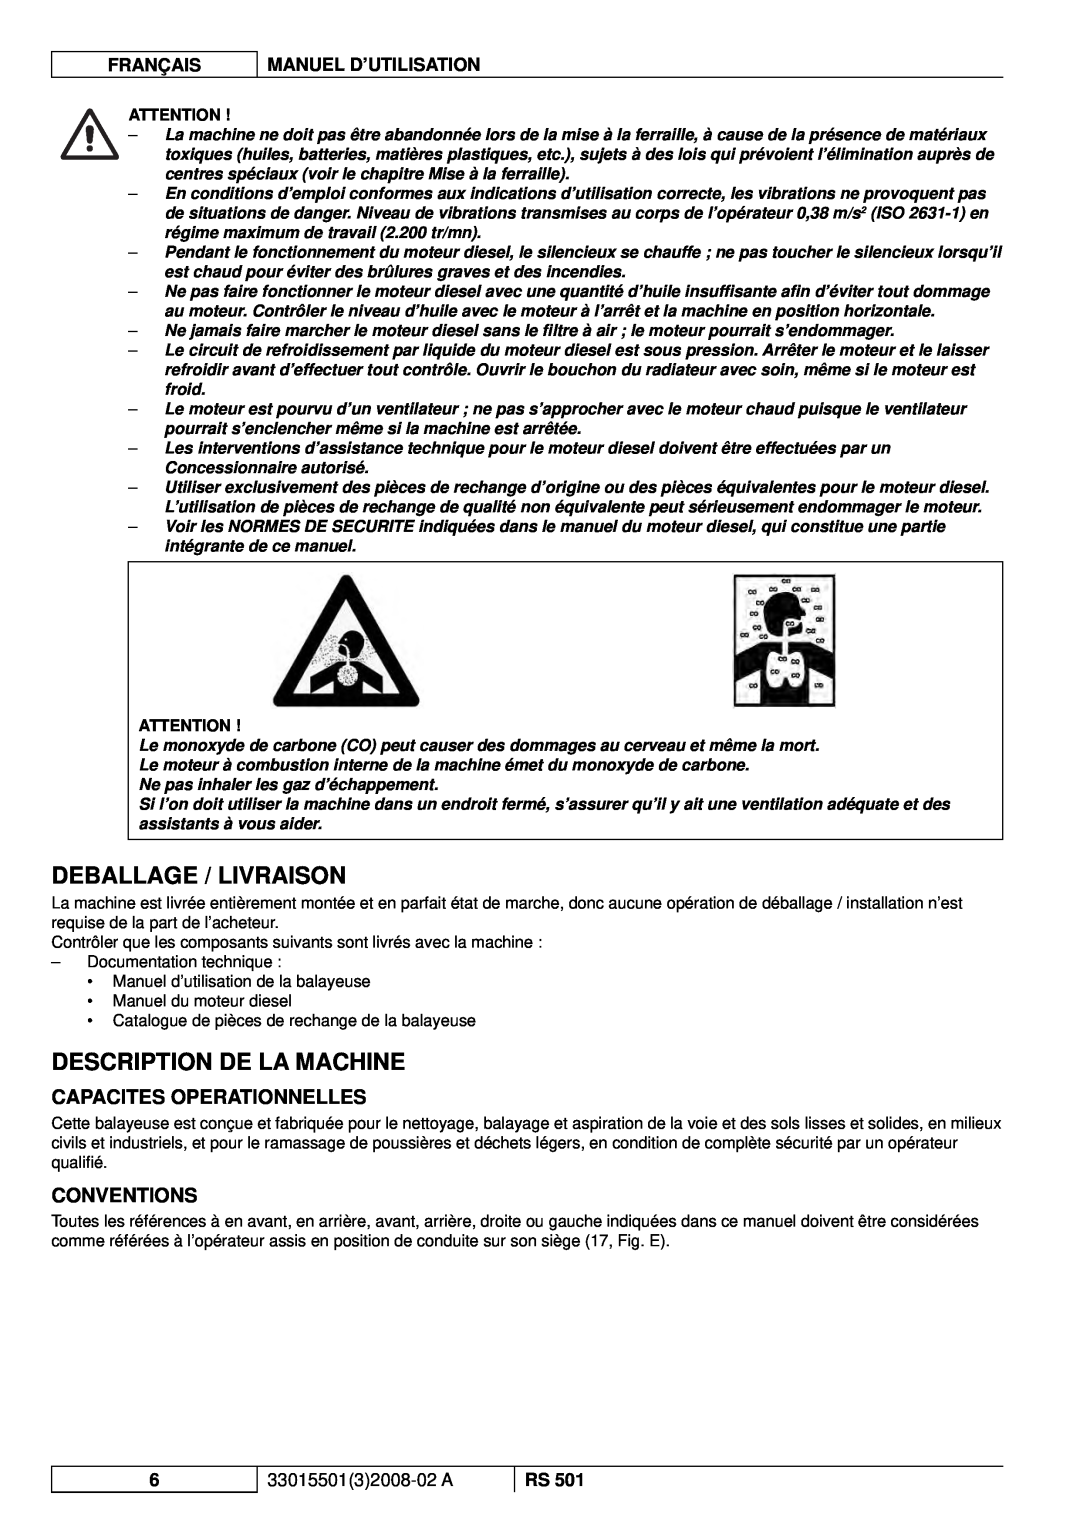 Nilfisk-ALTO RS 501 Deballage / Livraison, Description De La Machine, Capacites Operationnelles, Conventions, Français 